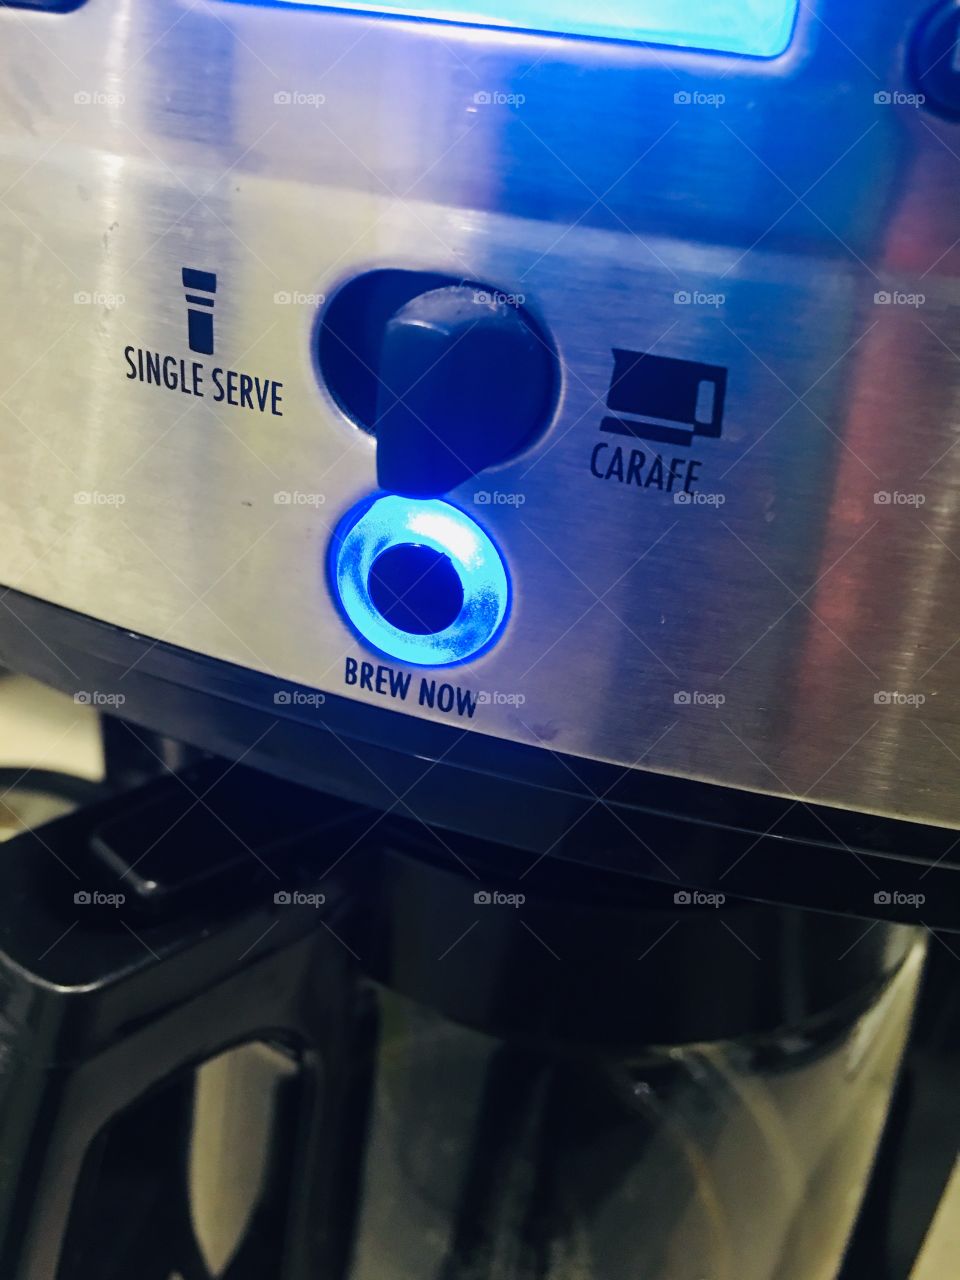 Coffee machine set to “brew now”